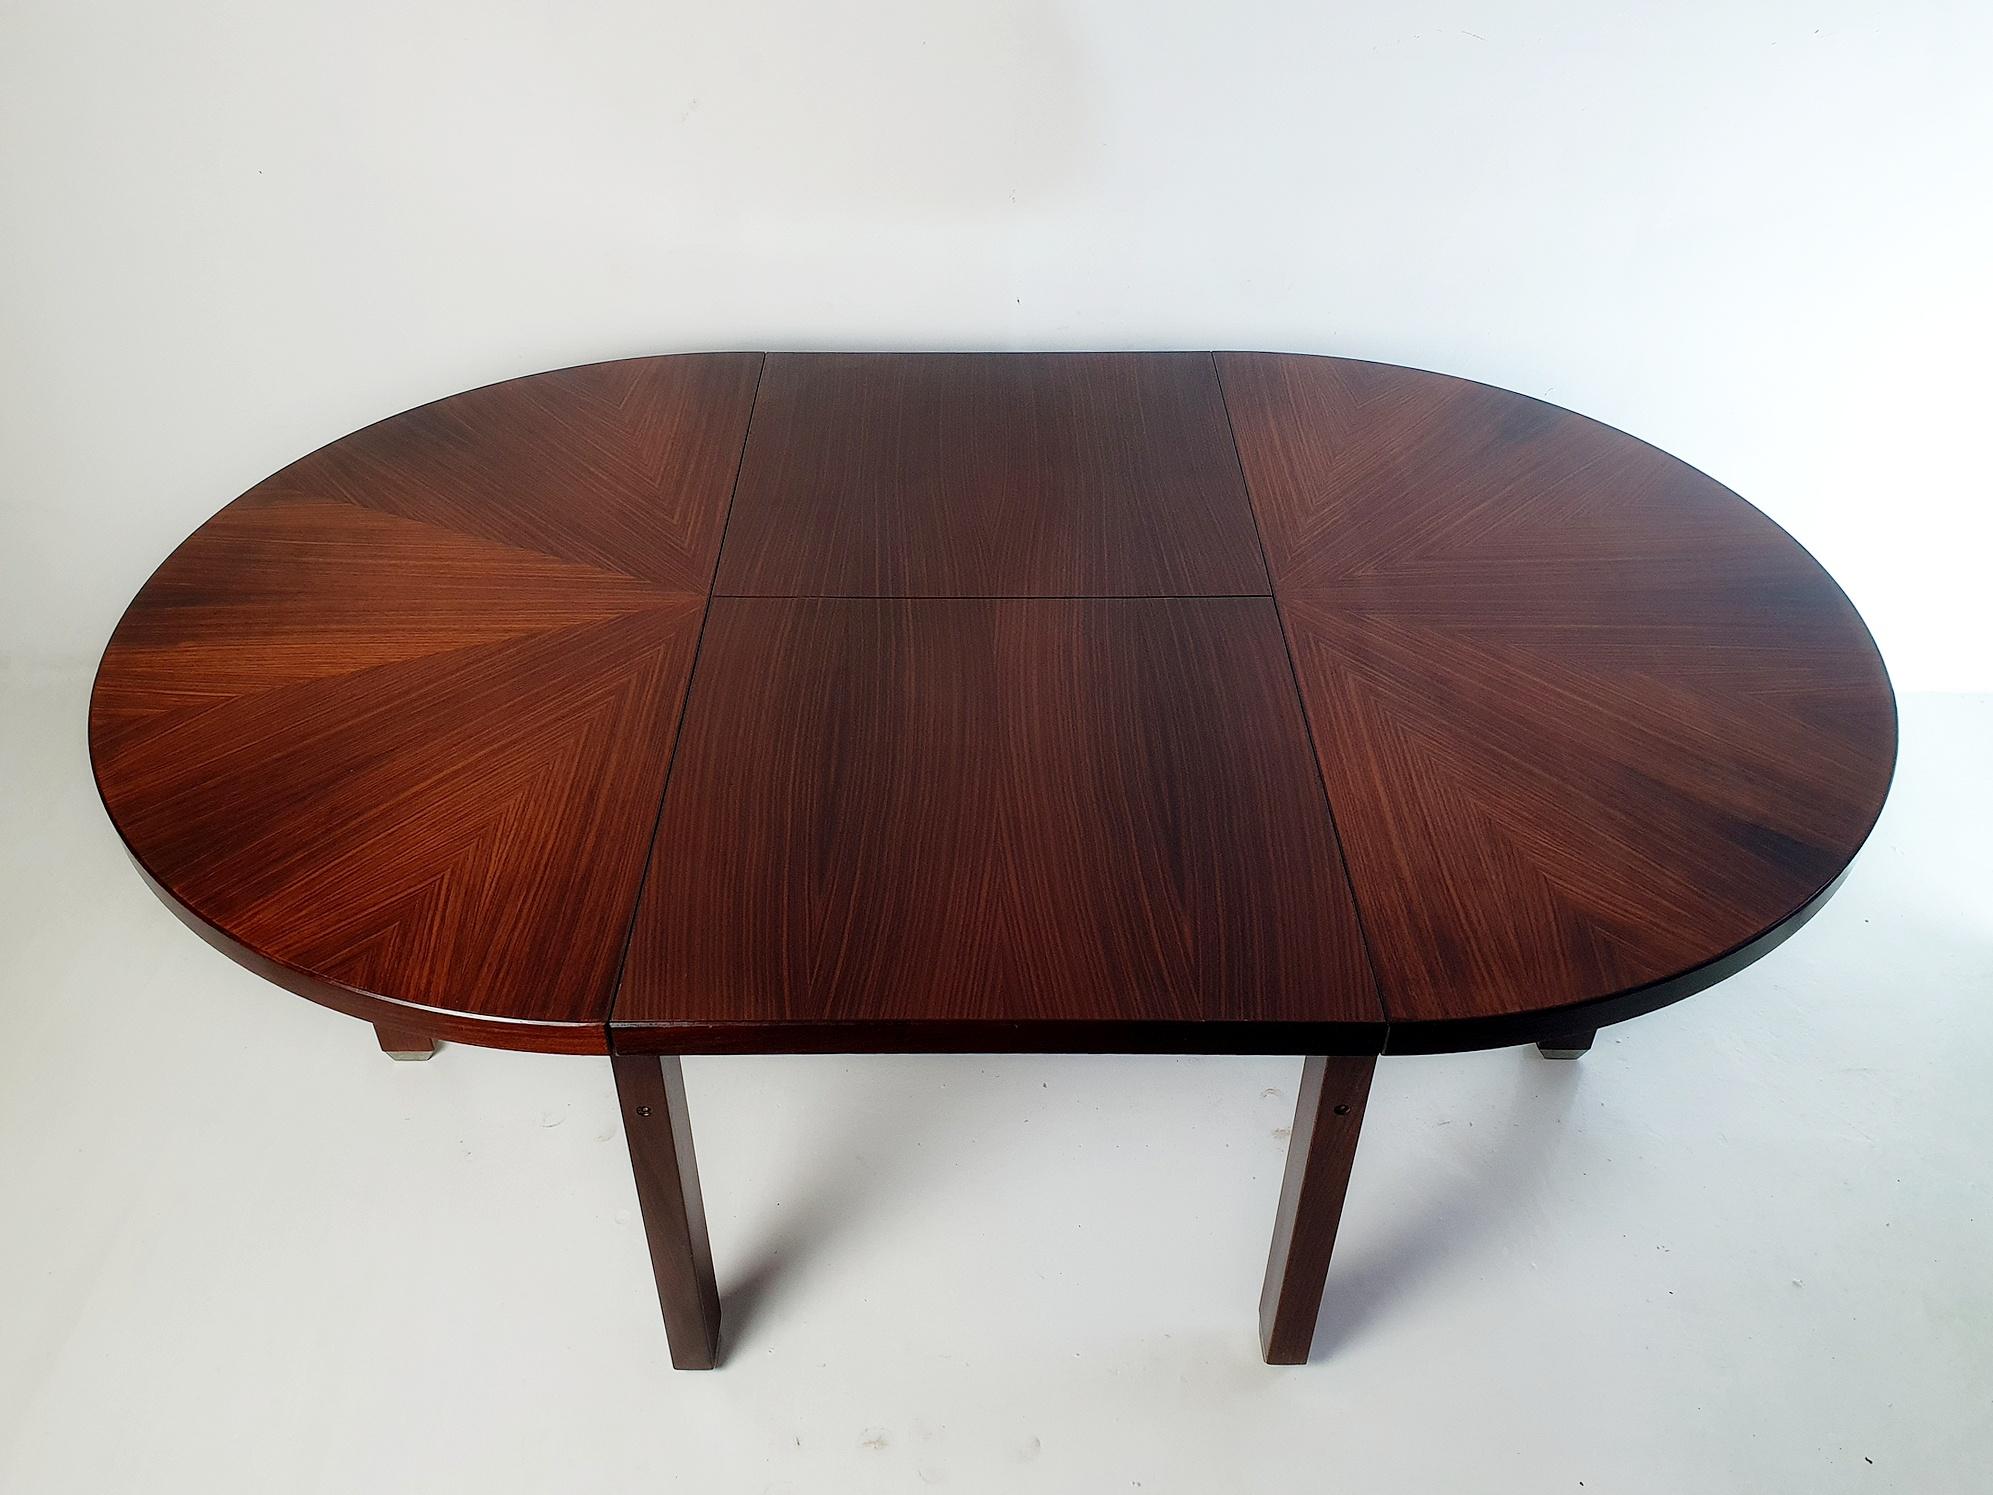 Runder, ausziehbarer Esstisch, entworfen von Ico Parisi für MIM Roma im Jahr 1958. Ico Parisi hat für MIM Roma eine komplette Kollektion von Einrichtungsgegenständen entworfen. Dieser Tisch hat einen Durchmesser von 120 Zentimetern und ist